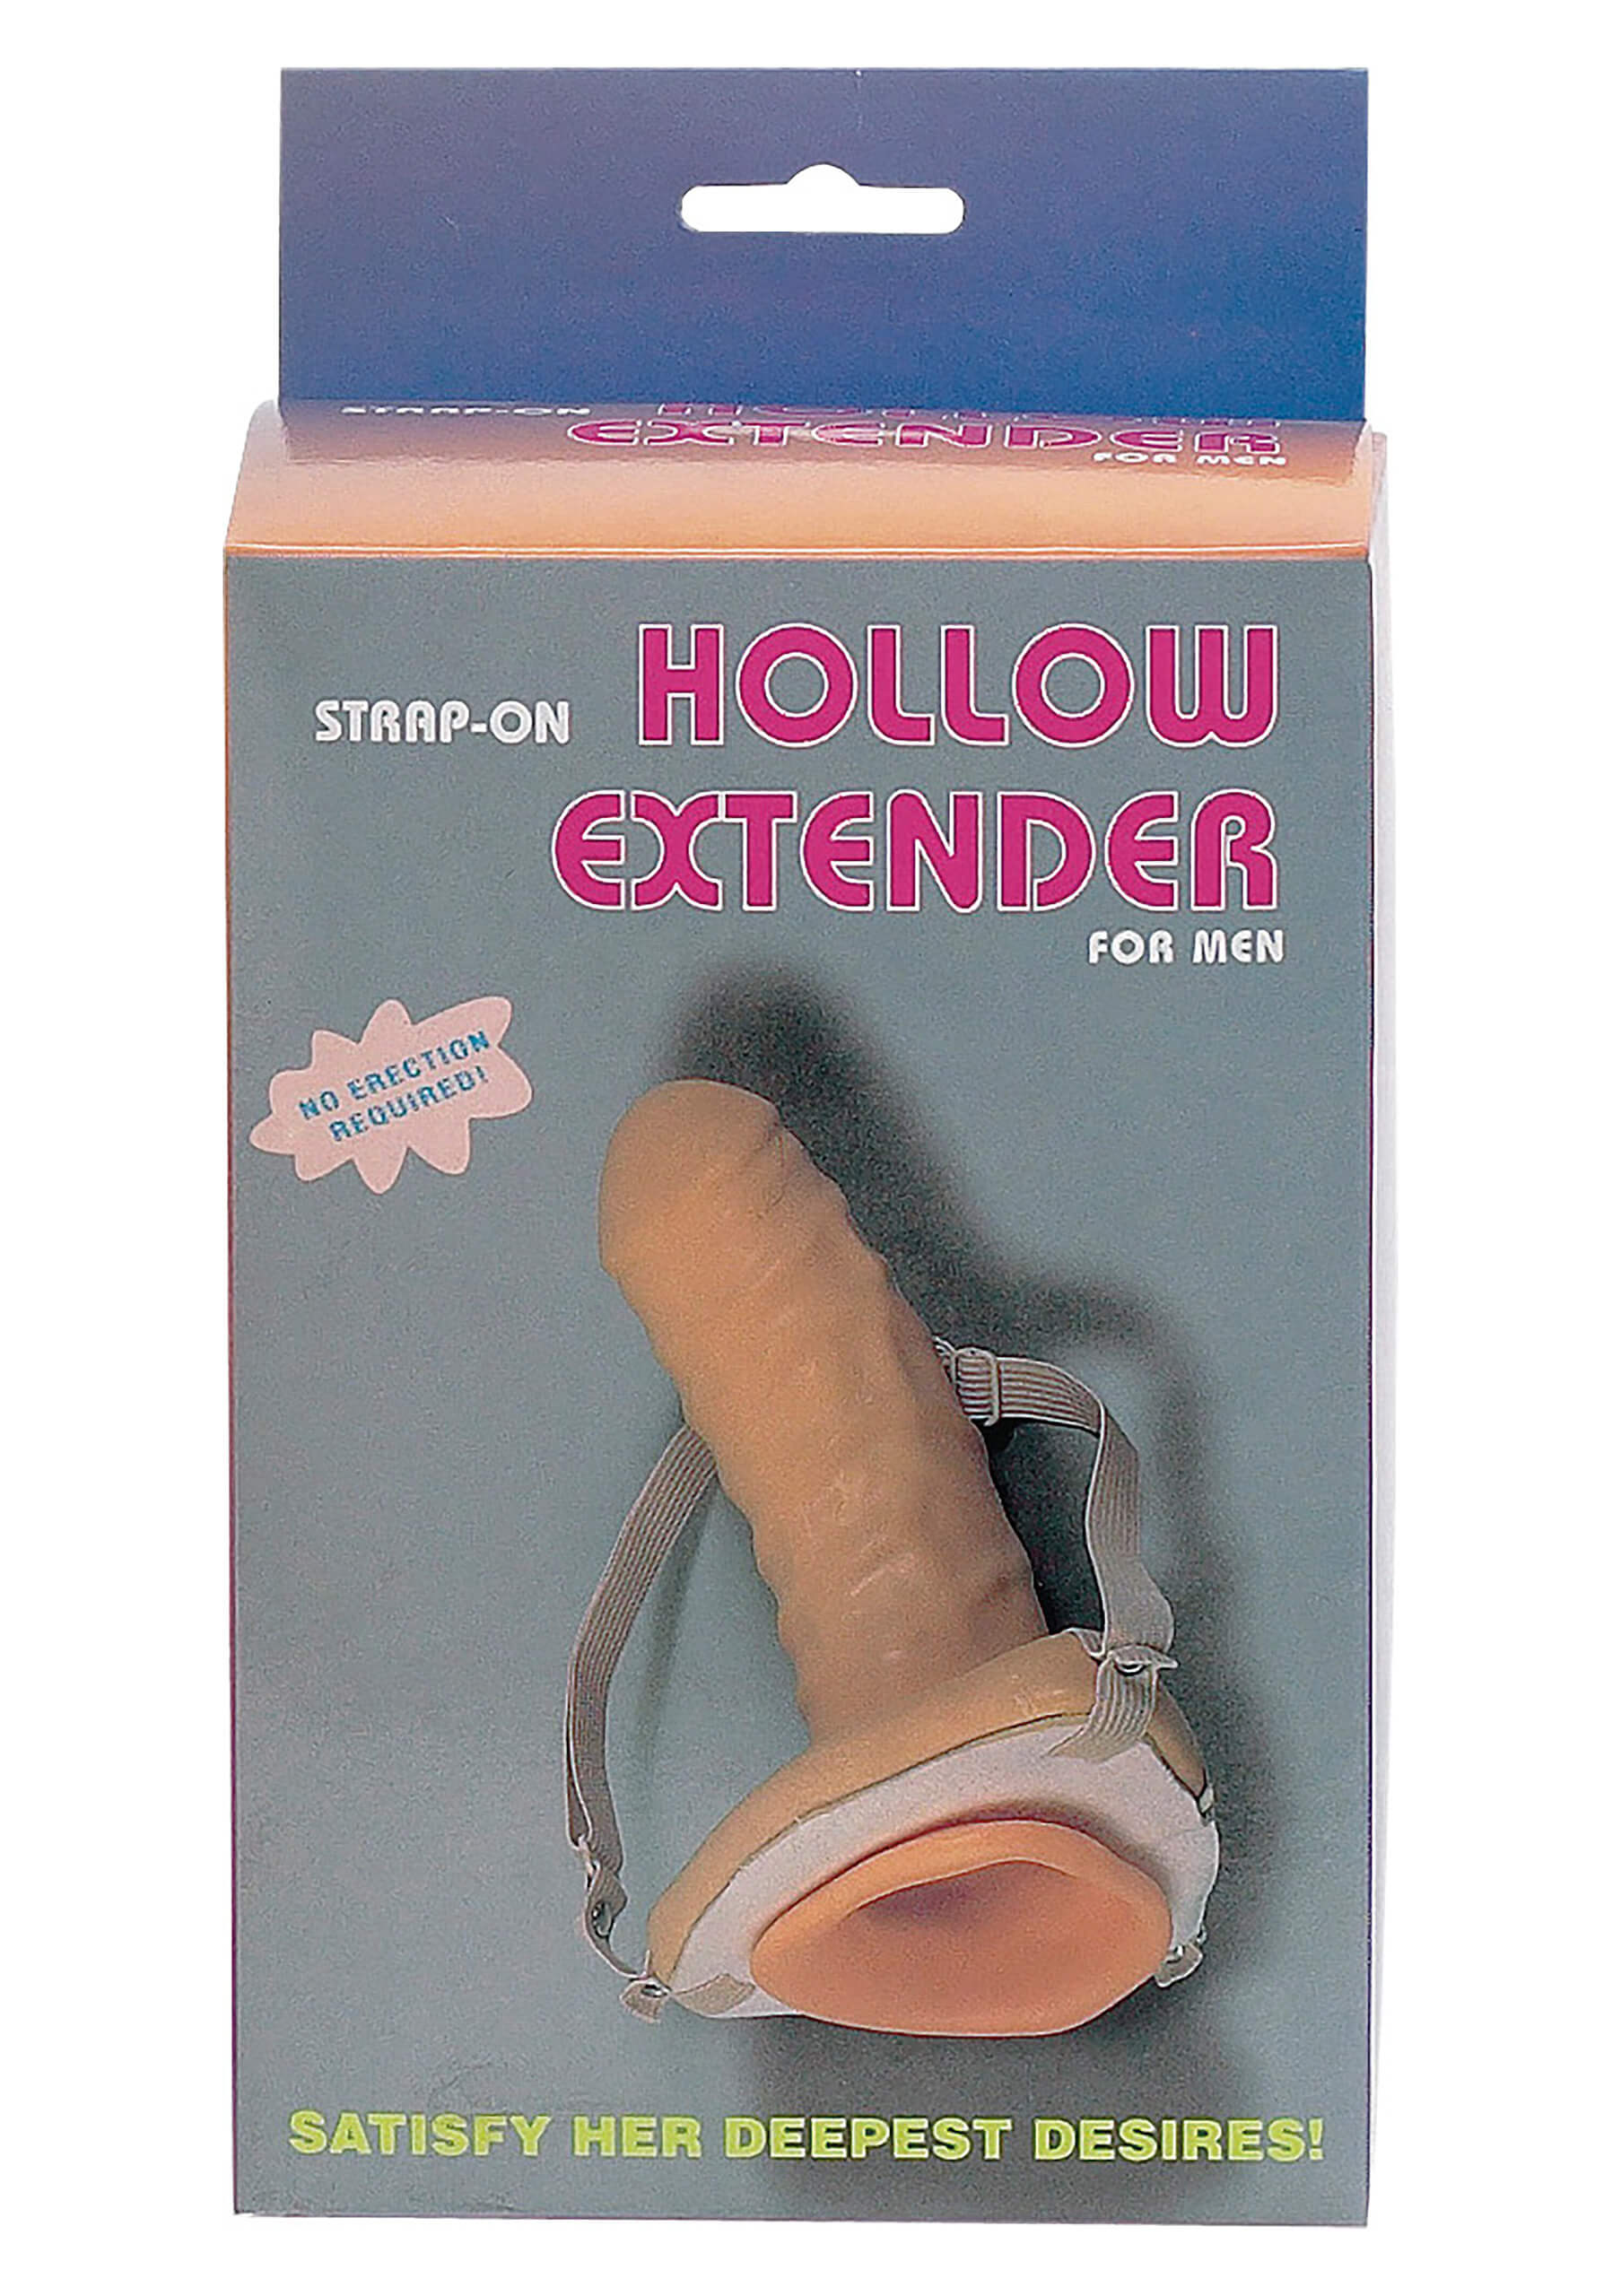 Strap-on Hollow Extender Man, připínací penis pro muže 17x5 cm